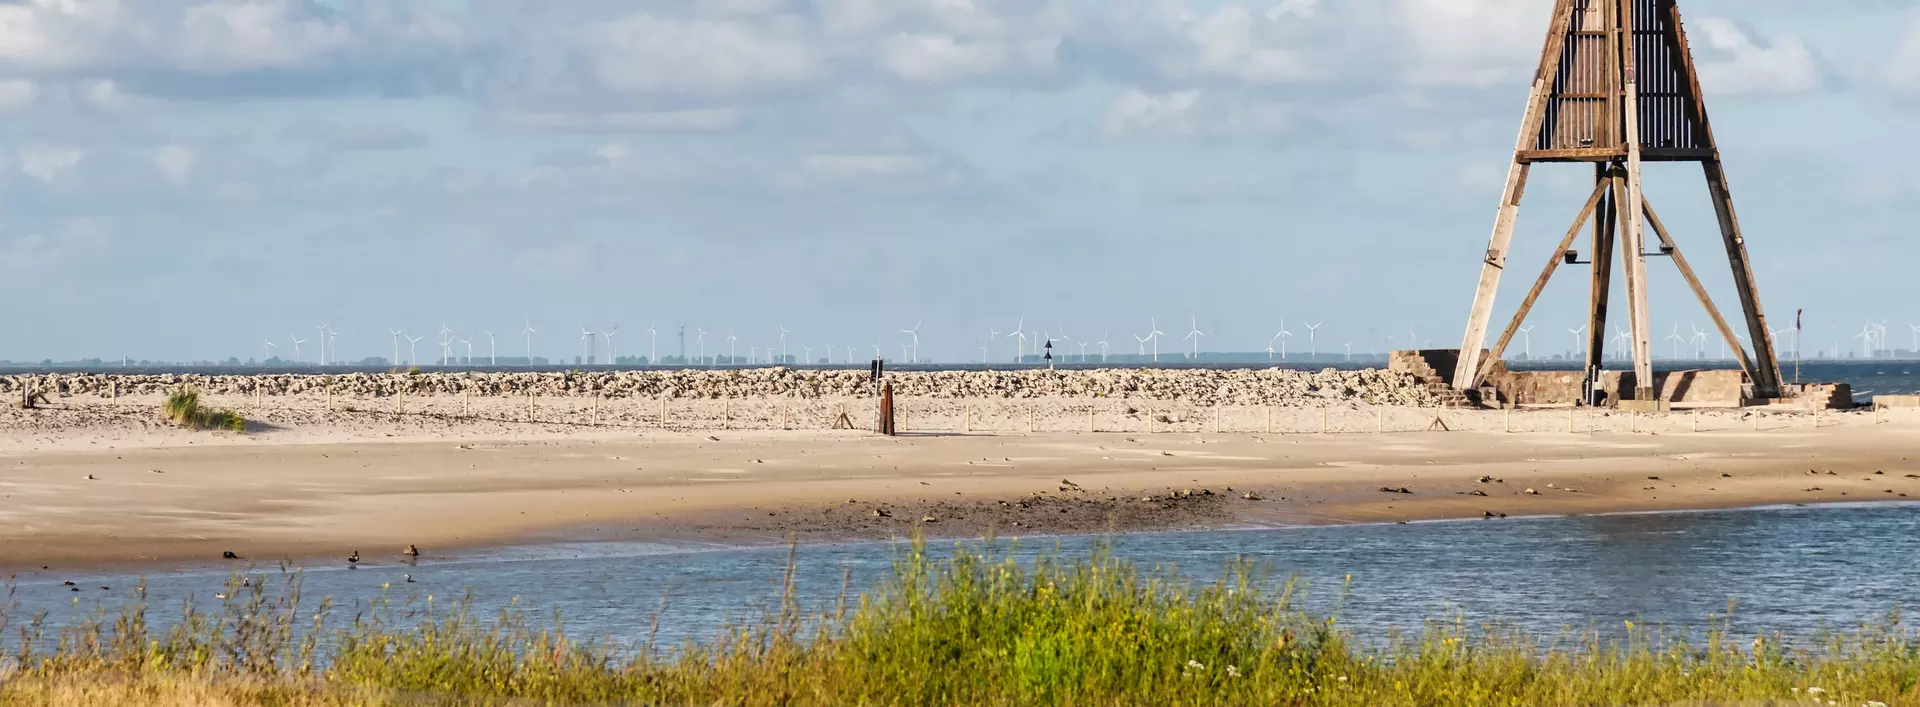 Blick auf das Wahrzeichen Kugelbake in Cuxhaven in Niedersachsen